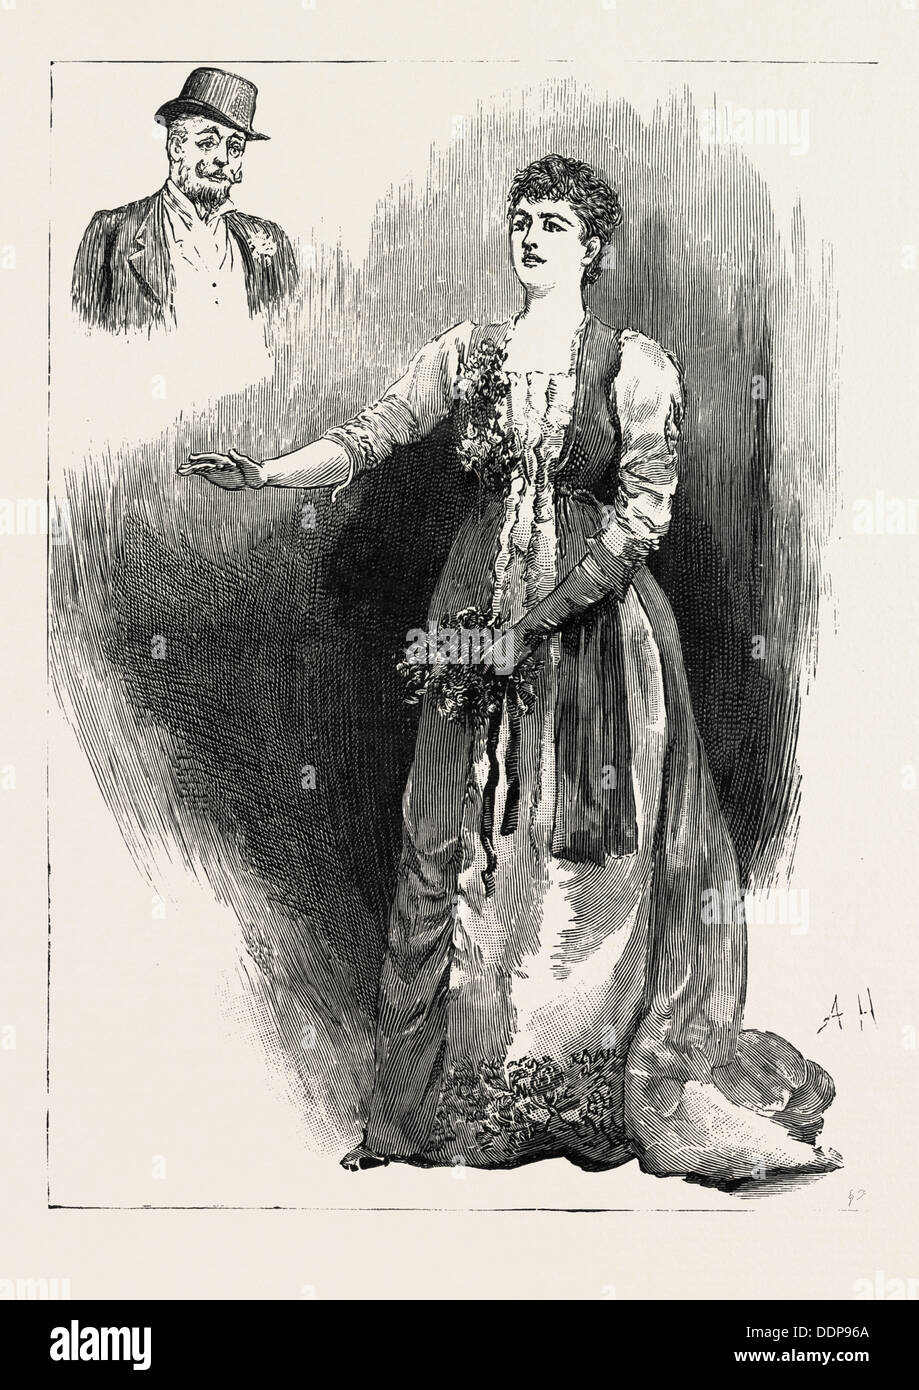 ARIANE, la Sra. Bernard-Beere ARIANE EN LA Opera Comique, jugar en Londres, Reino Unido, Inglaterra, Reino Unido, u.k., Gran Bretaña, 1888 Foto de stock